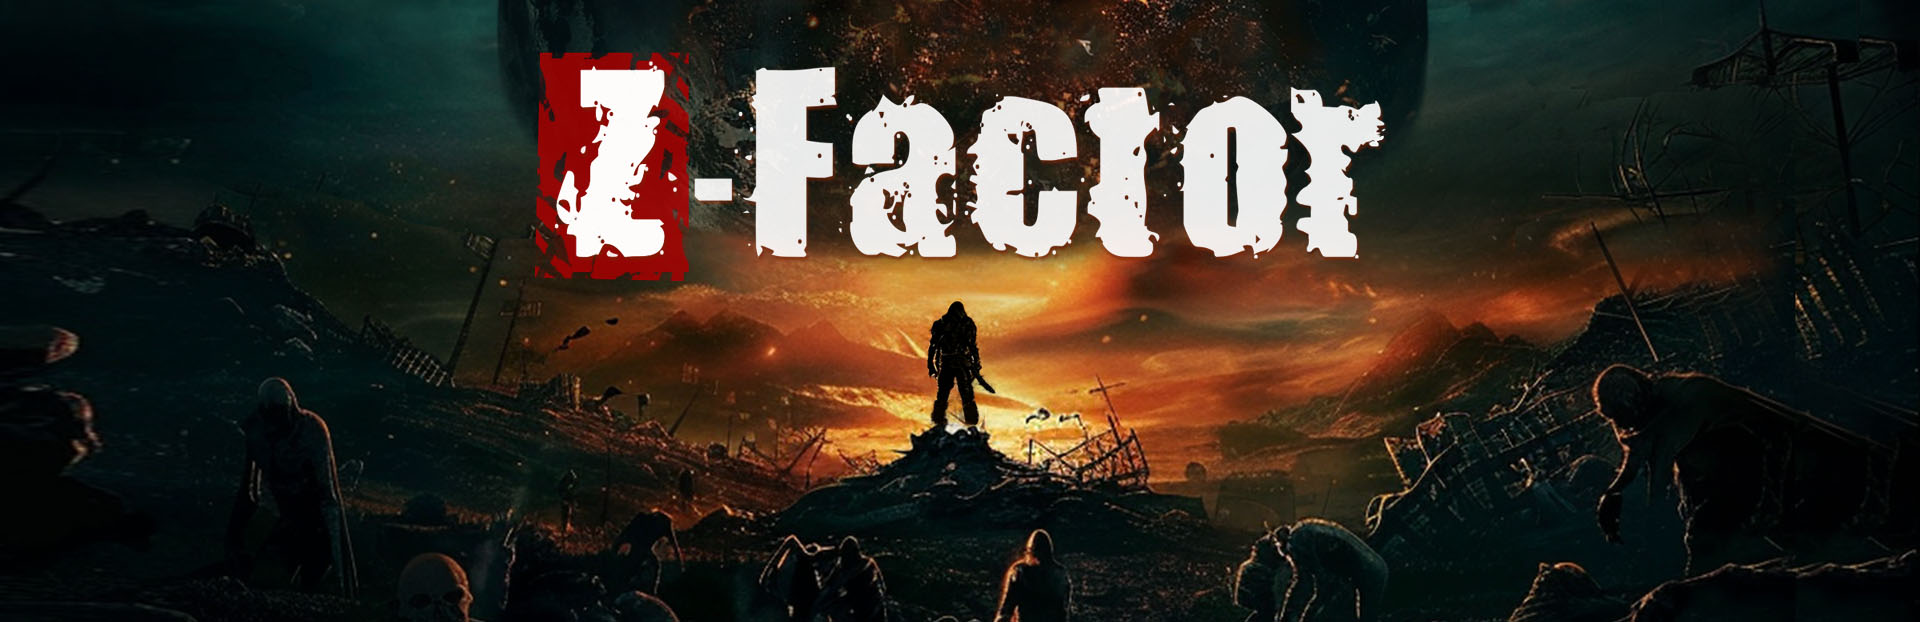 Z-Factor